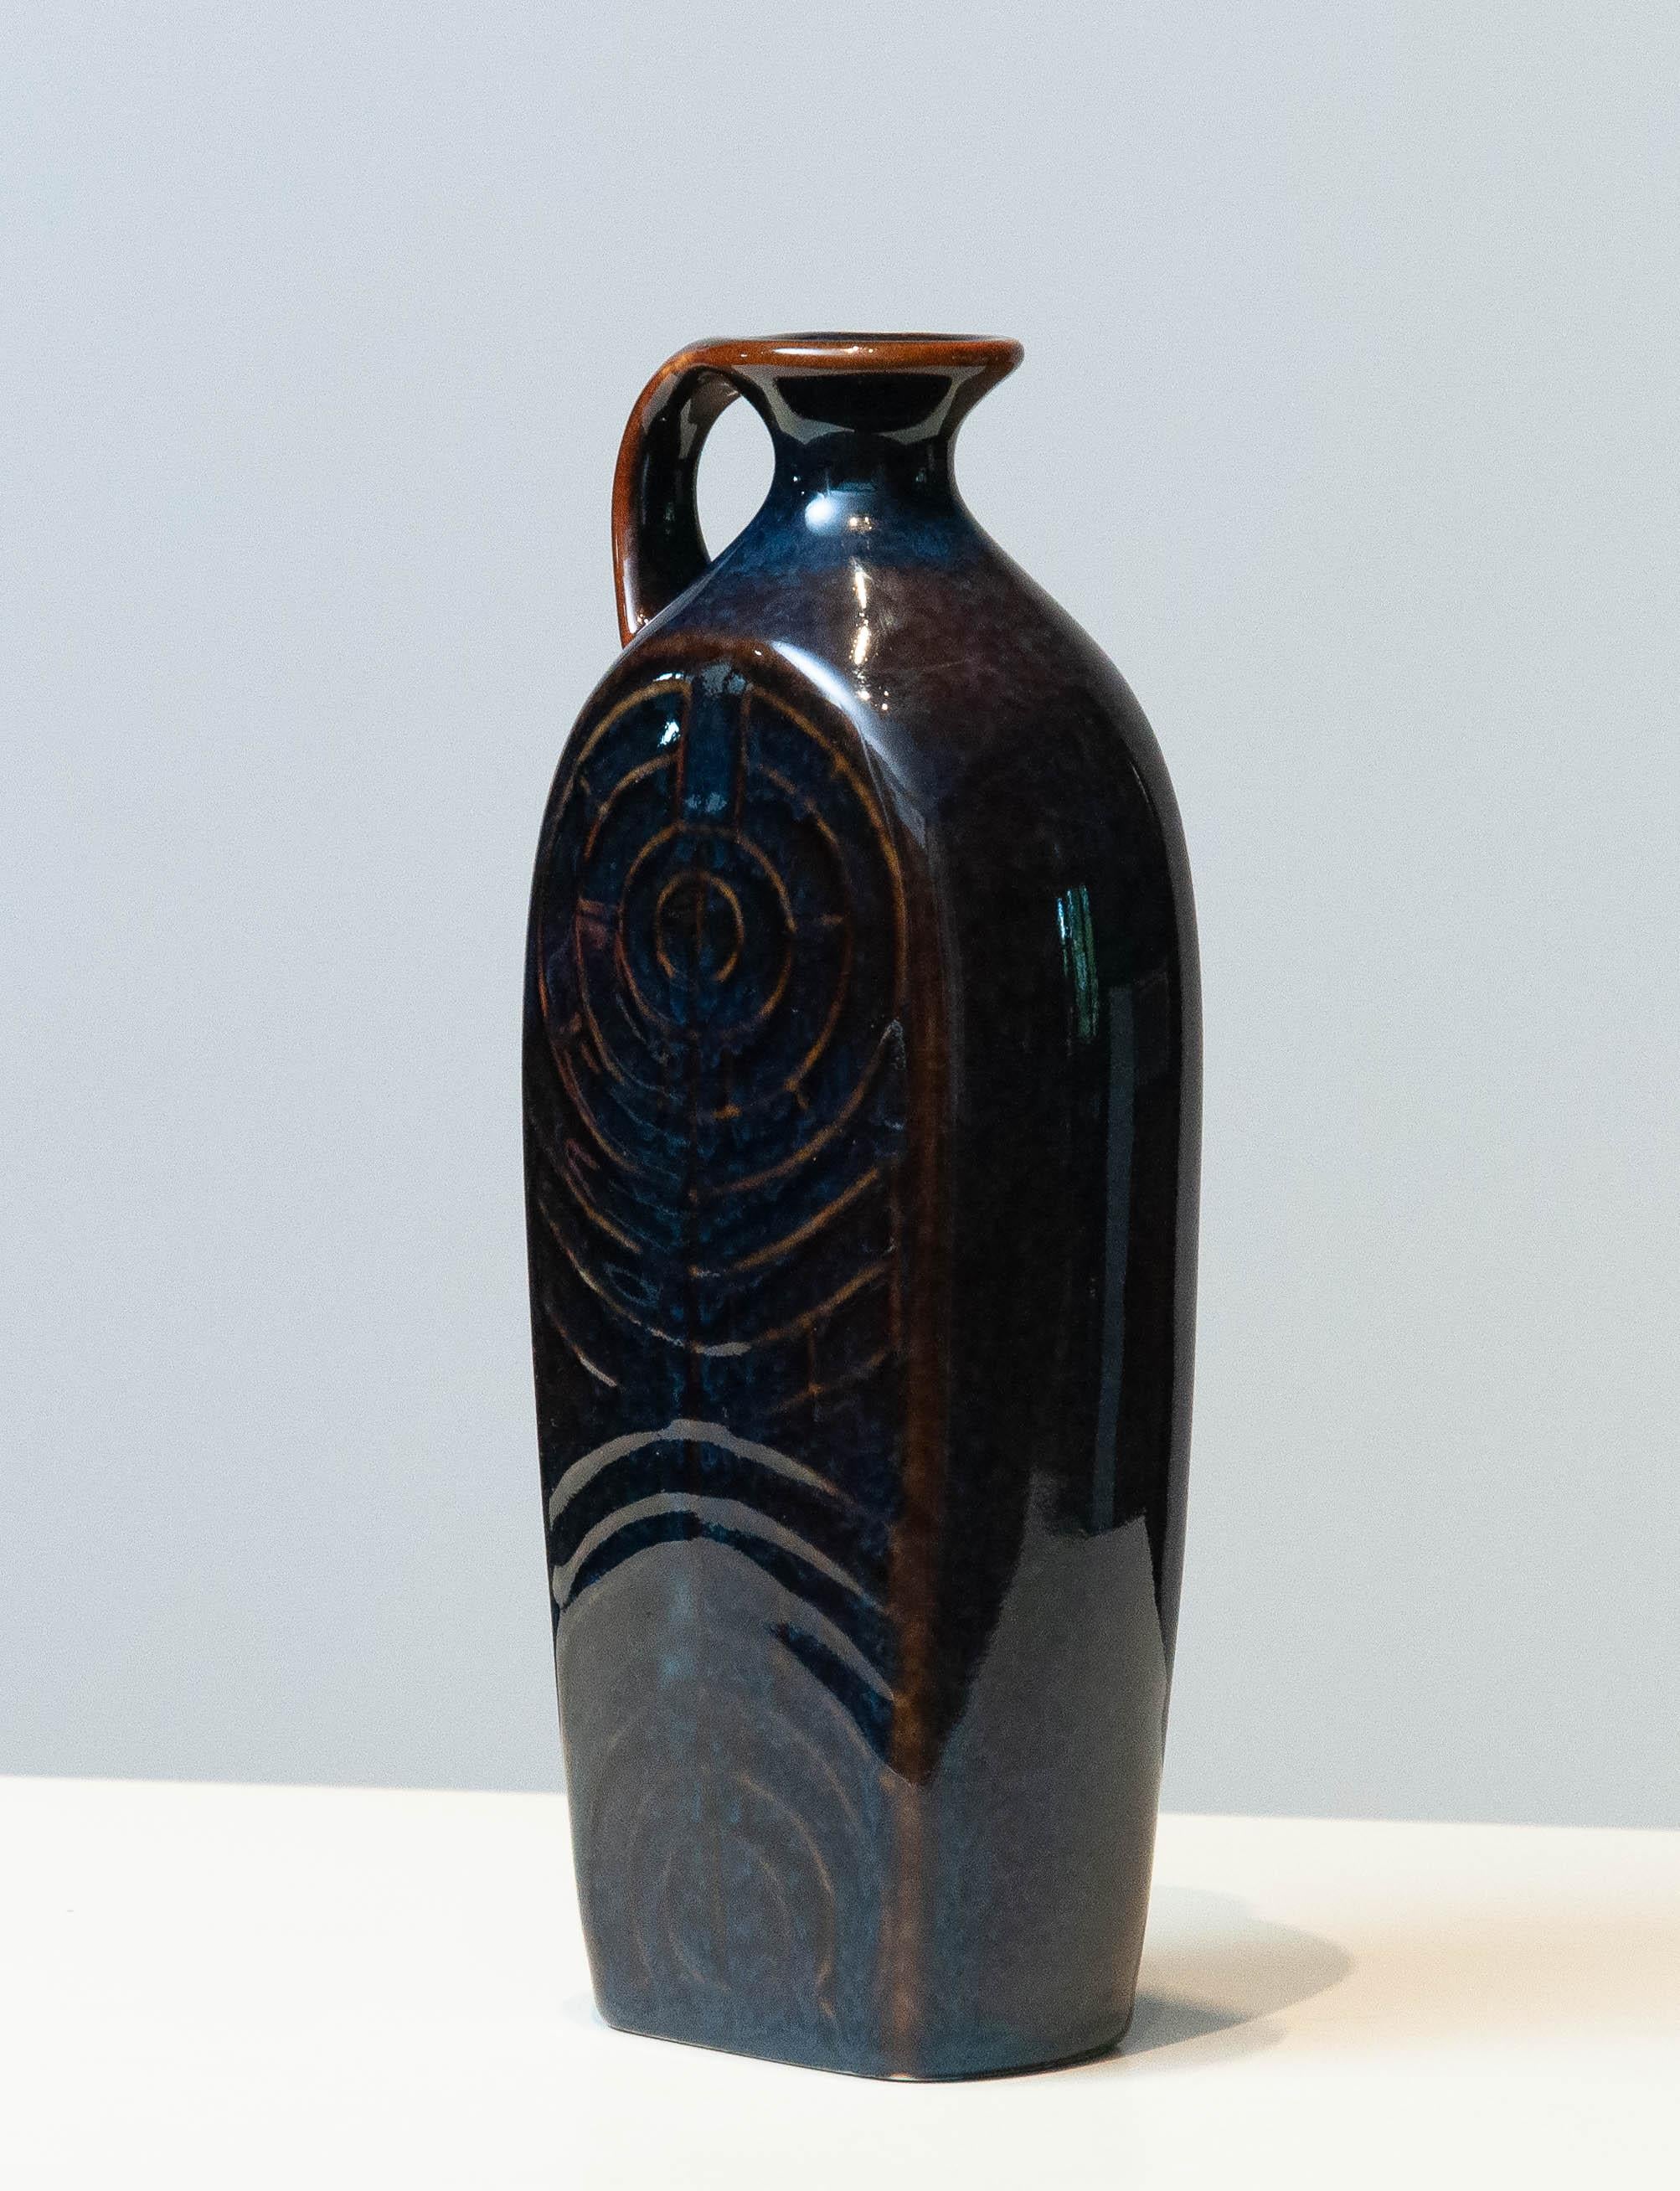 Fantastische glasierte Kanne / Vase von Carl-Harry Stålhane für Rörstrand Schweden in den 1950er Jahren. Die extrem schöne Kombination aus blauen und braunen Farben, die glasiert sind, und das schlanke Design machen diesen Krug zu einer Ikone und zu